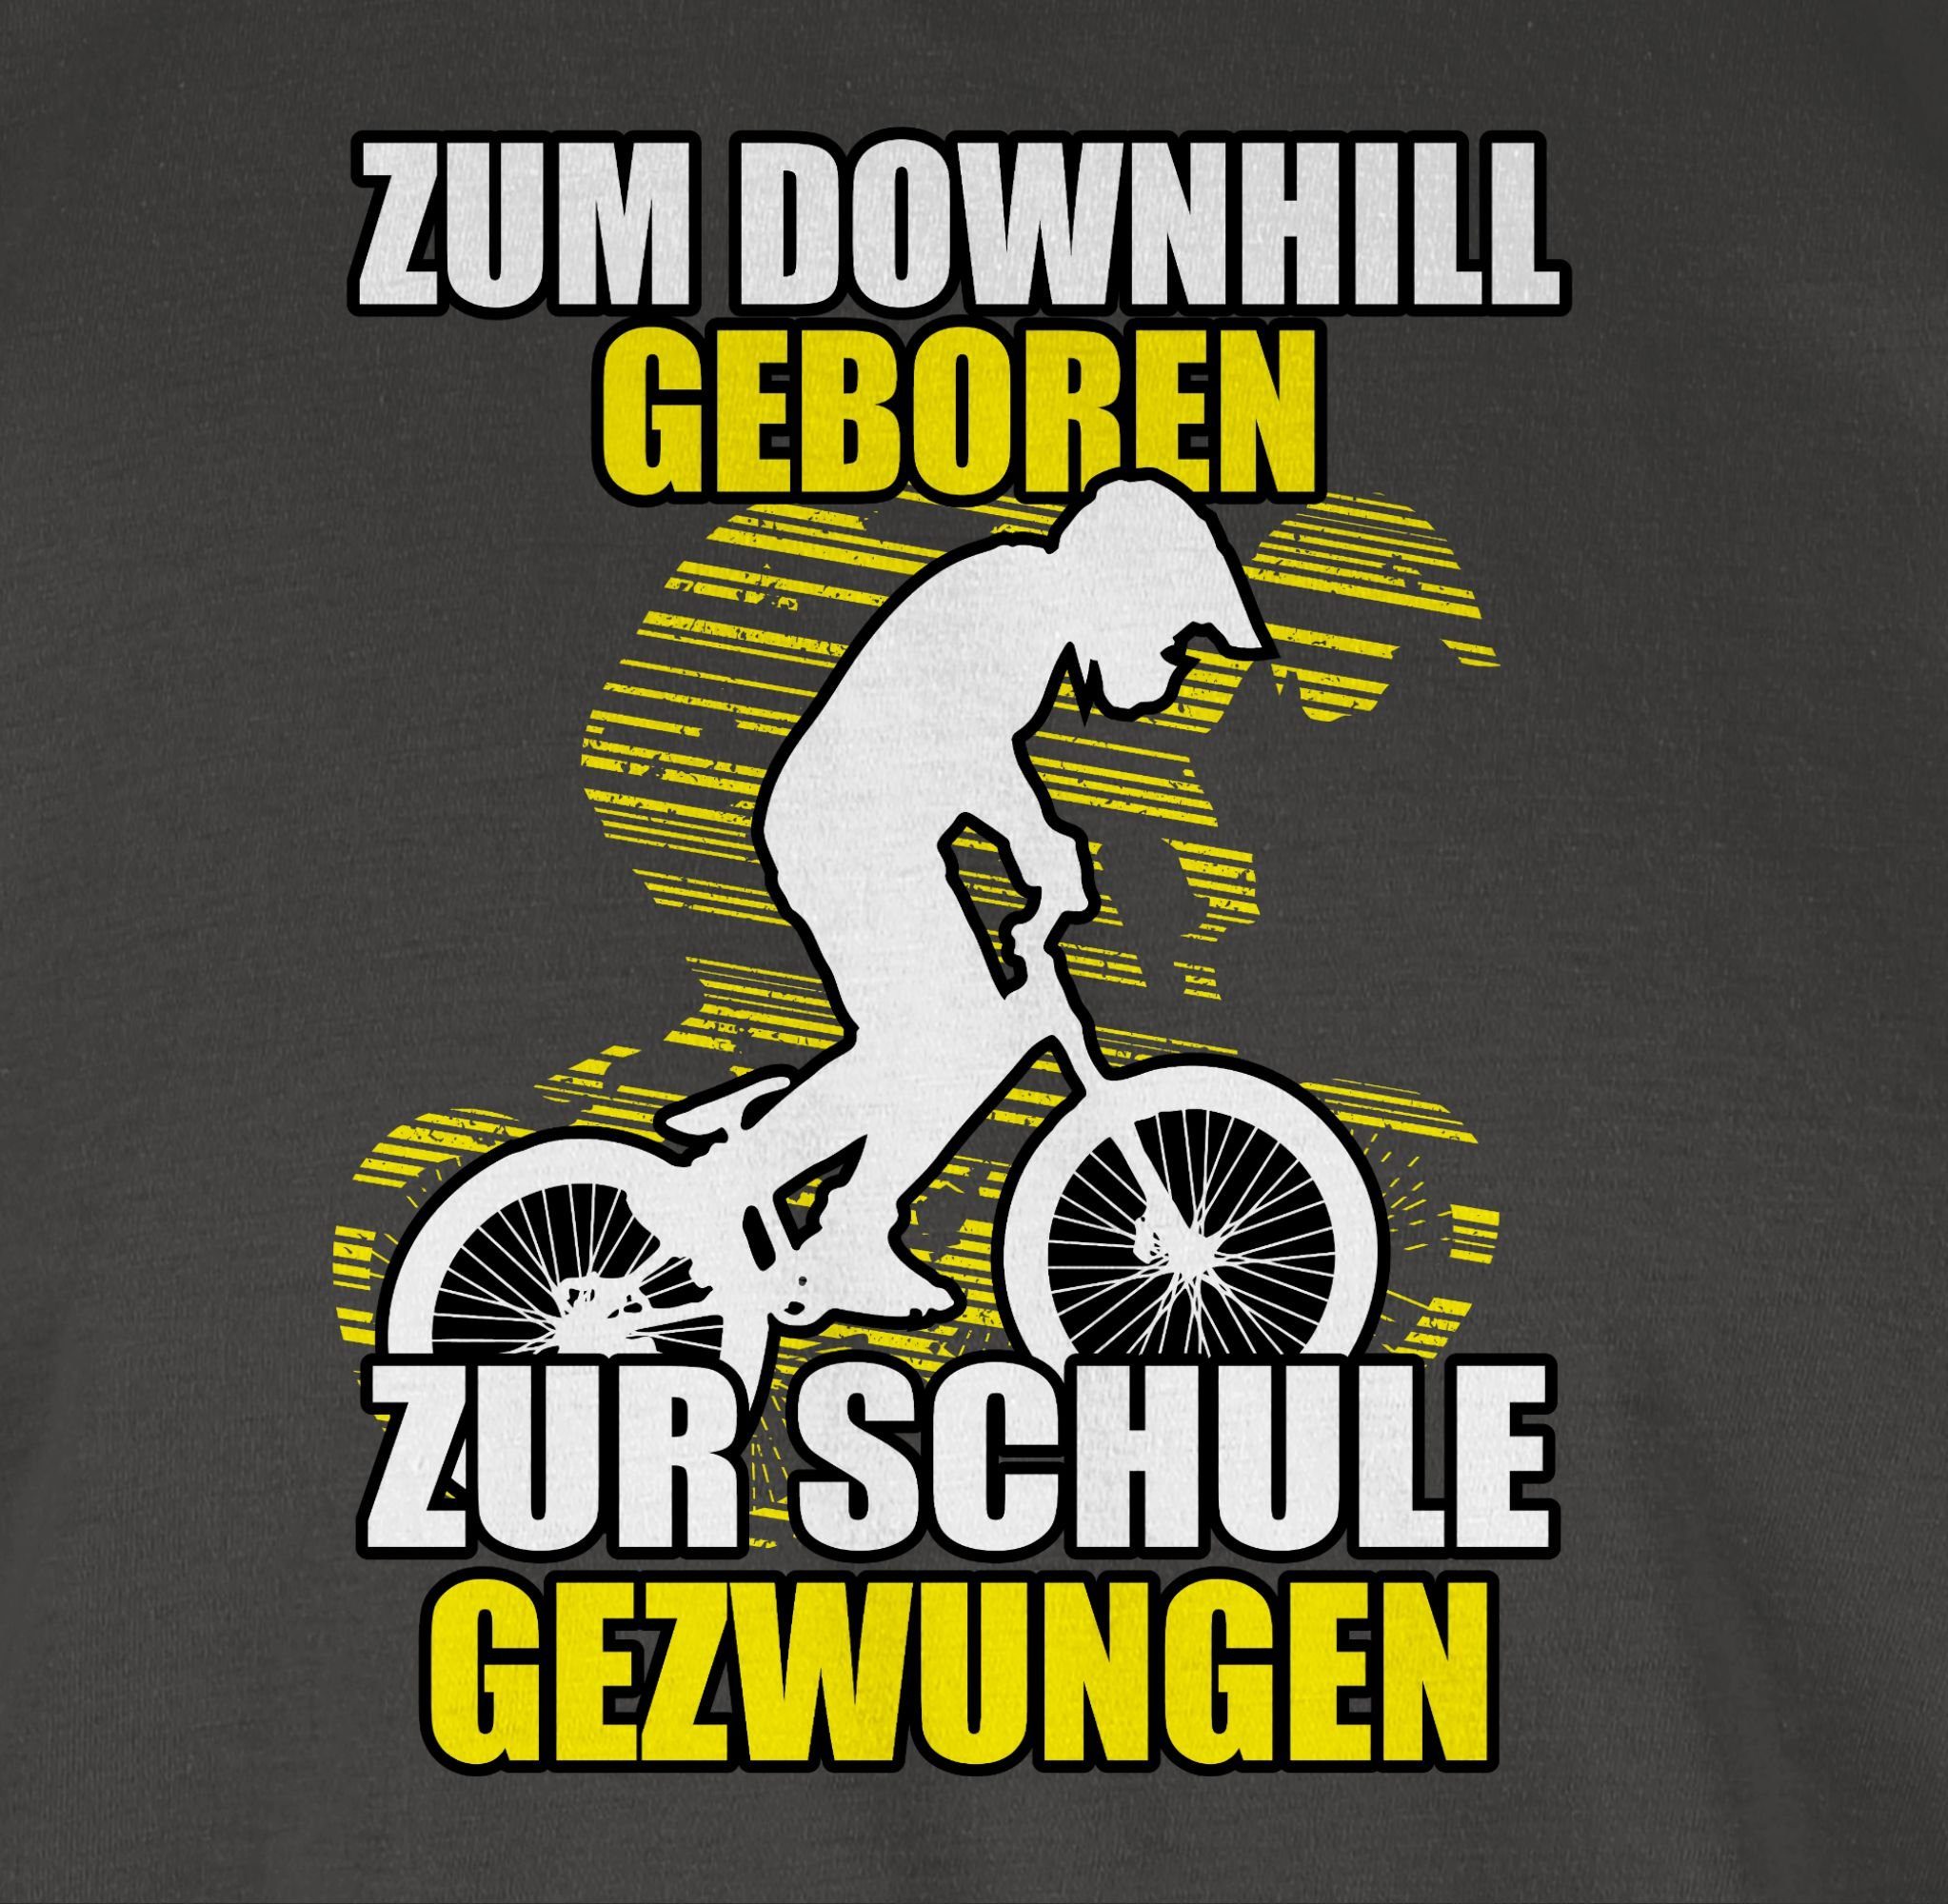 Shirtracer T-Shirt Zum Downhill Fahrrad Dunkelgrau Radsport zur geboren Bekleidung Schule 01 gezwungen